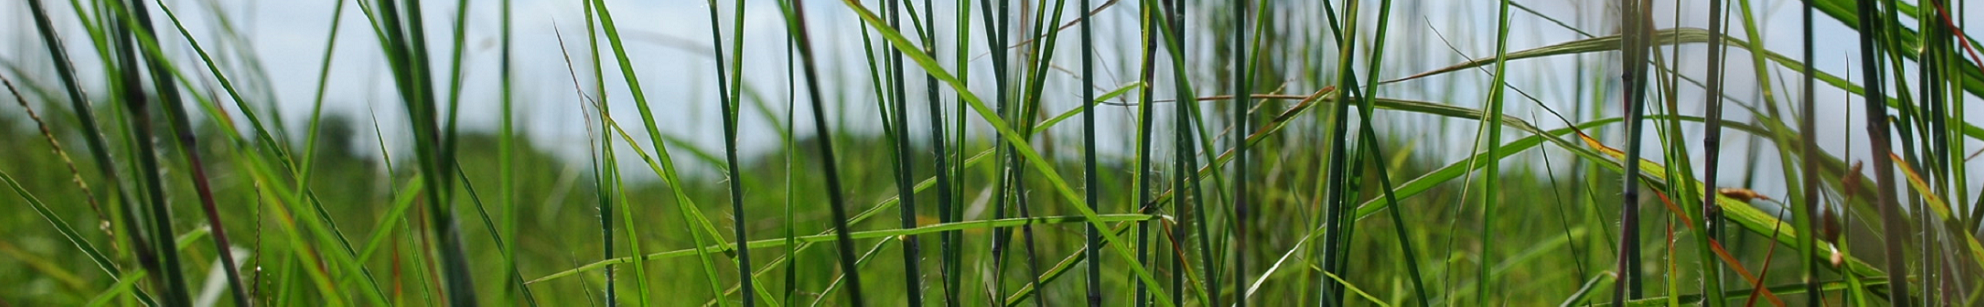 Grass blades in a field